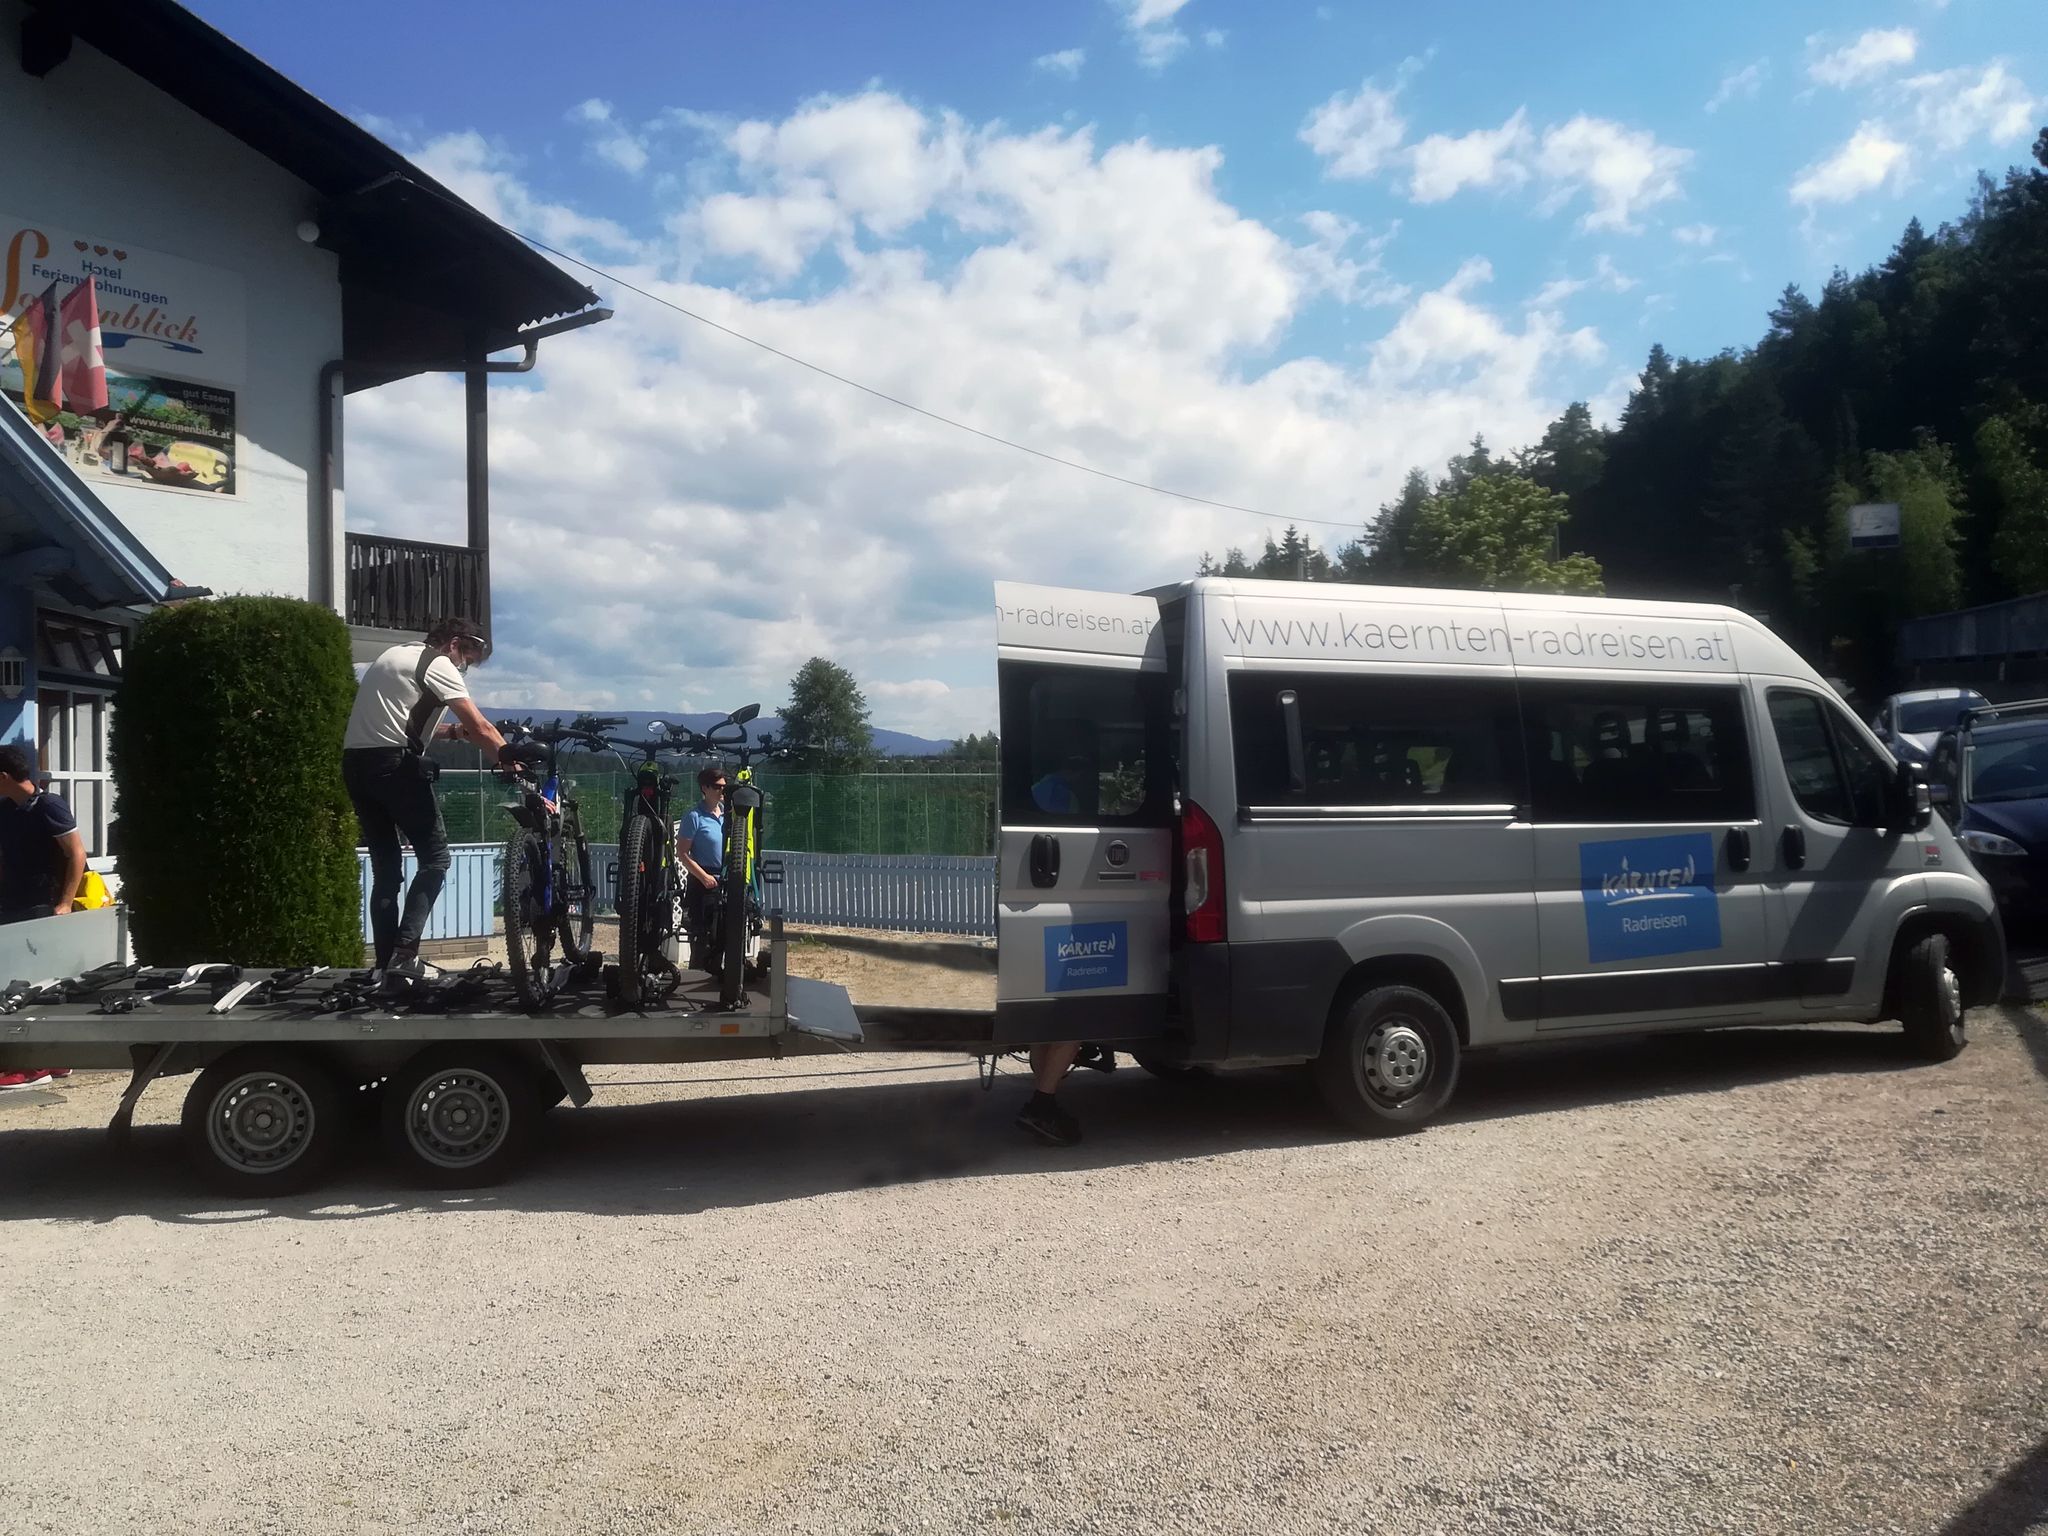 bequeme das Gepäck transportieren lassen - der Kärnten Radreisen Drauradwegbus